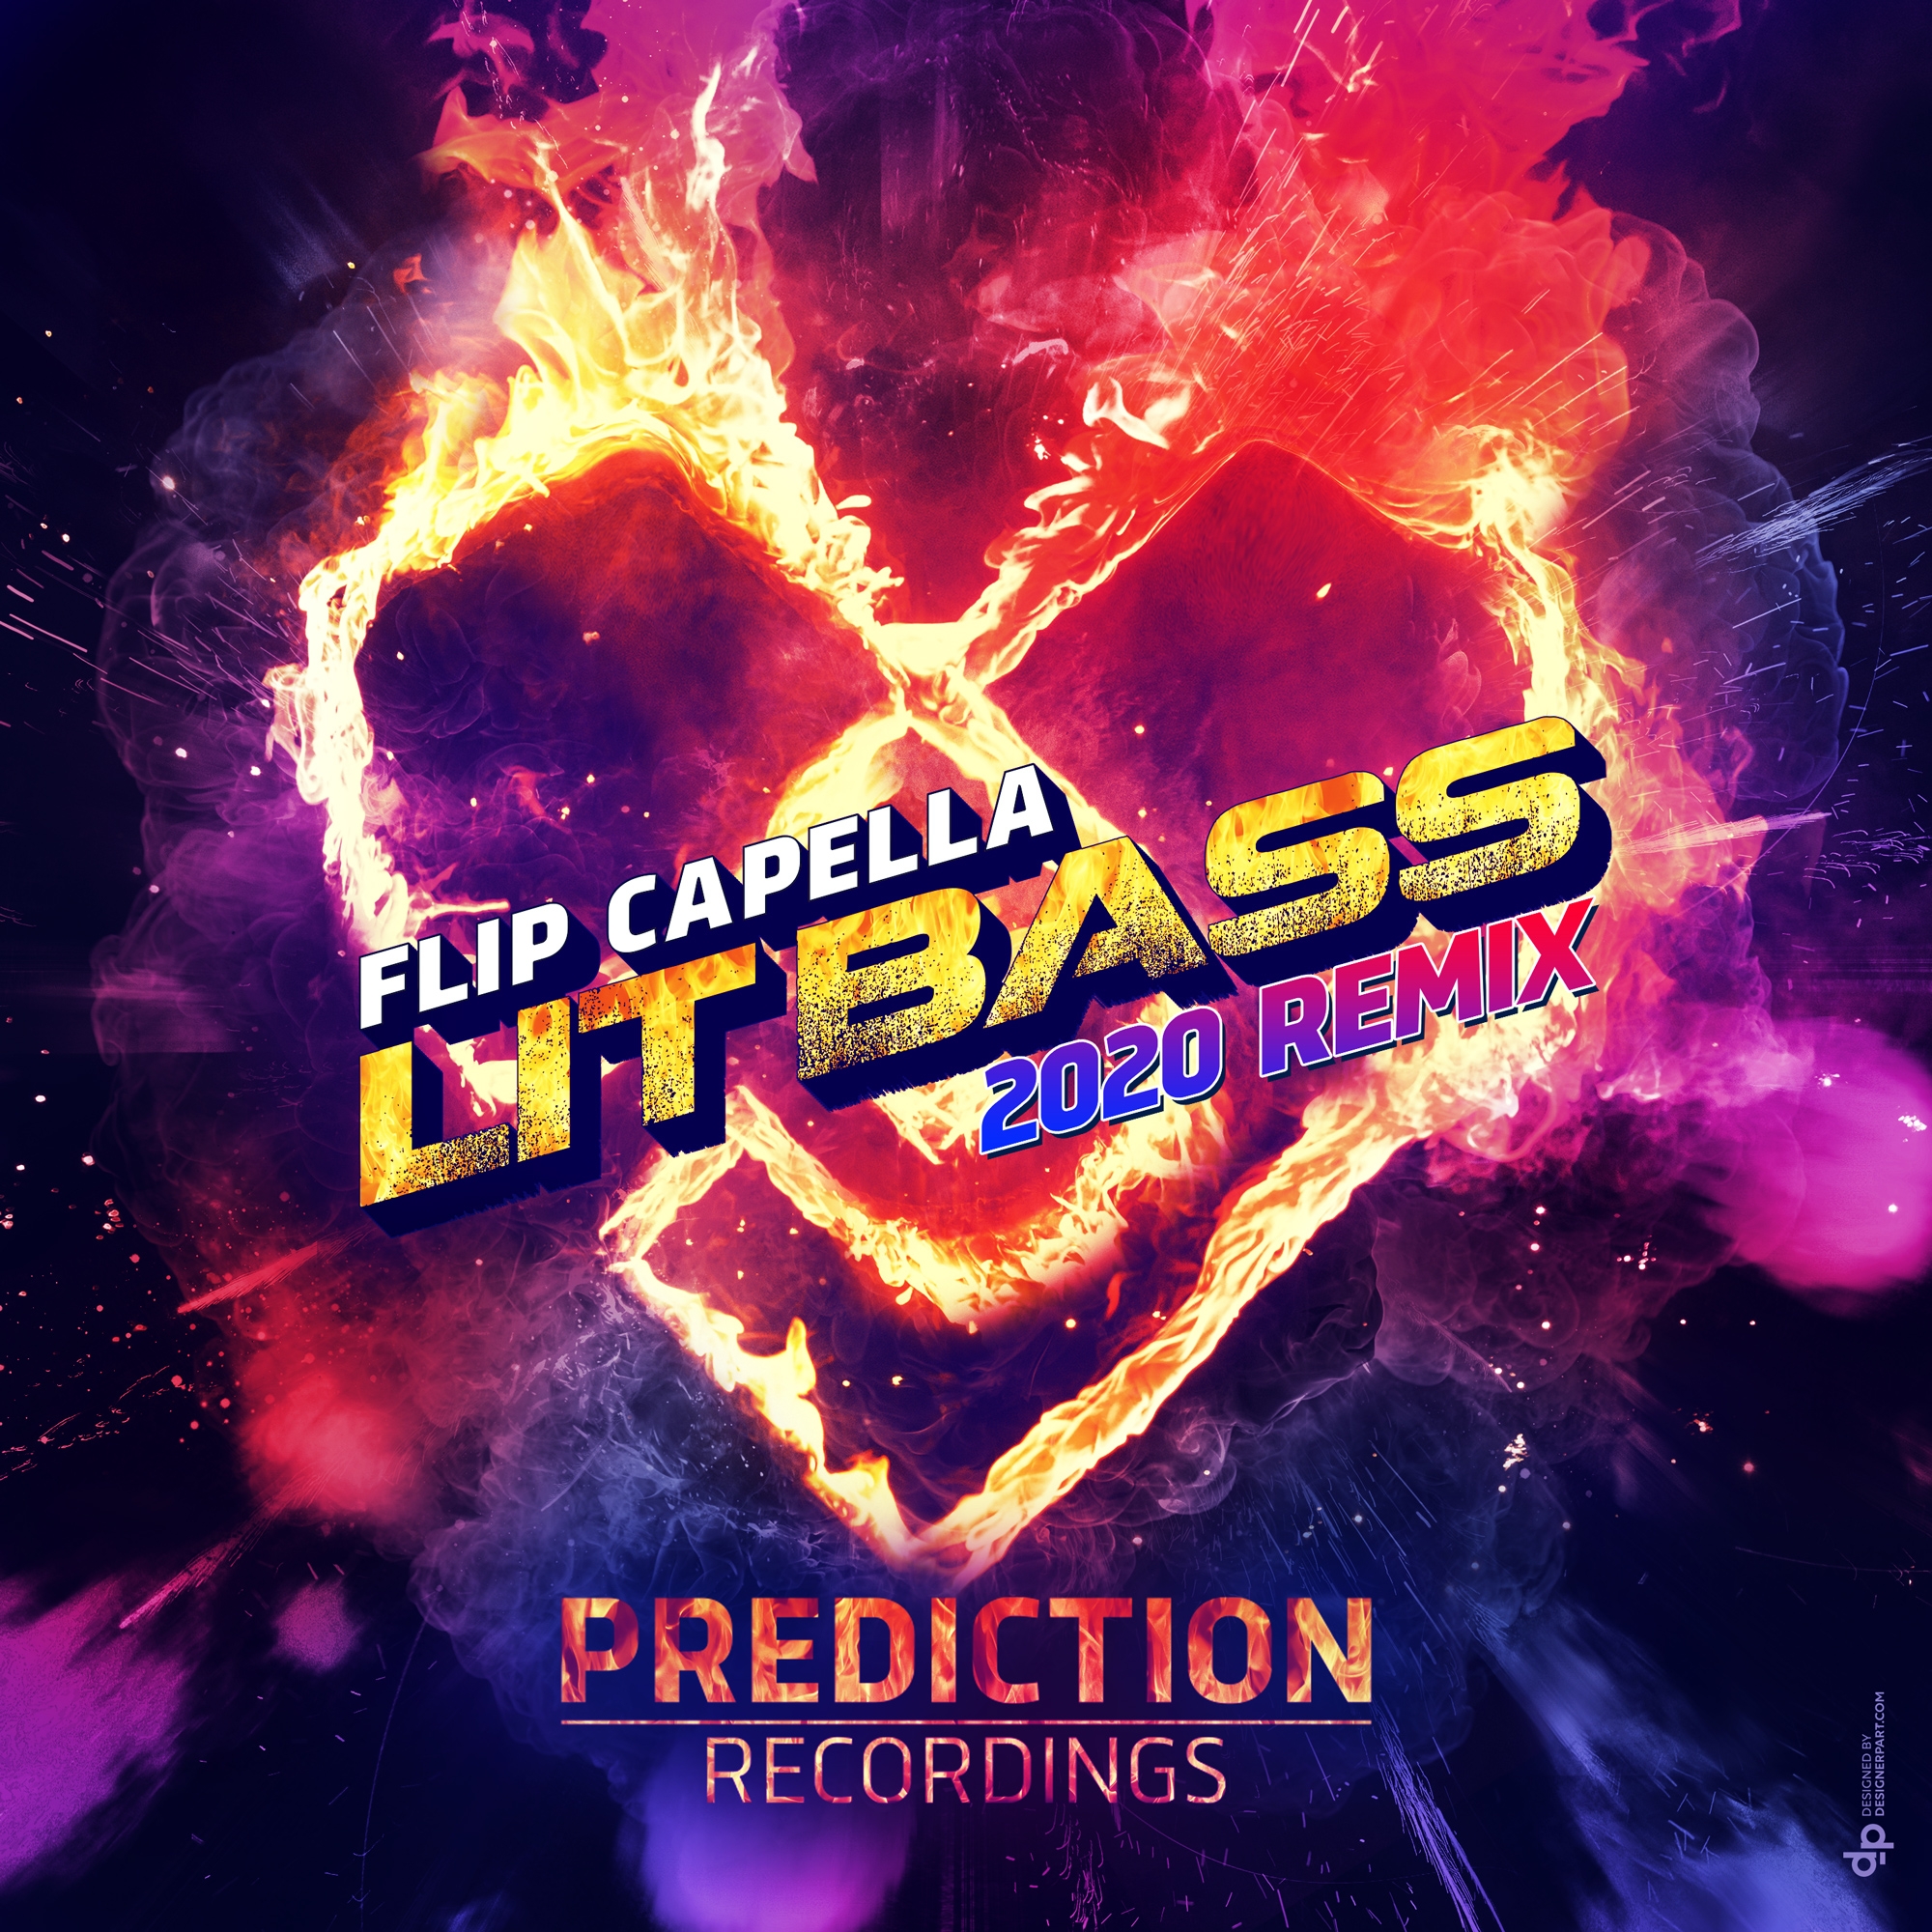 Crystal Rock & Zombic & Flip Capella - Sandstorm тегг. Flip Capella feat. Febration - just friends. Bass extended mix